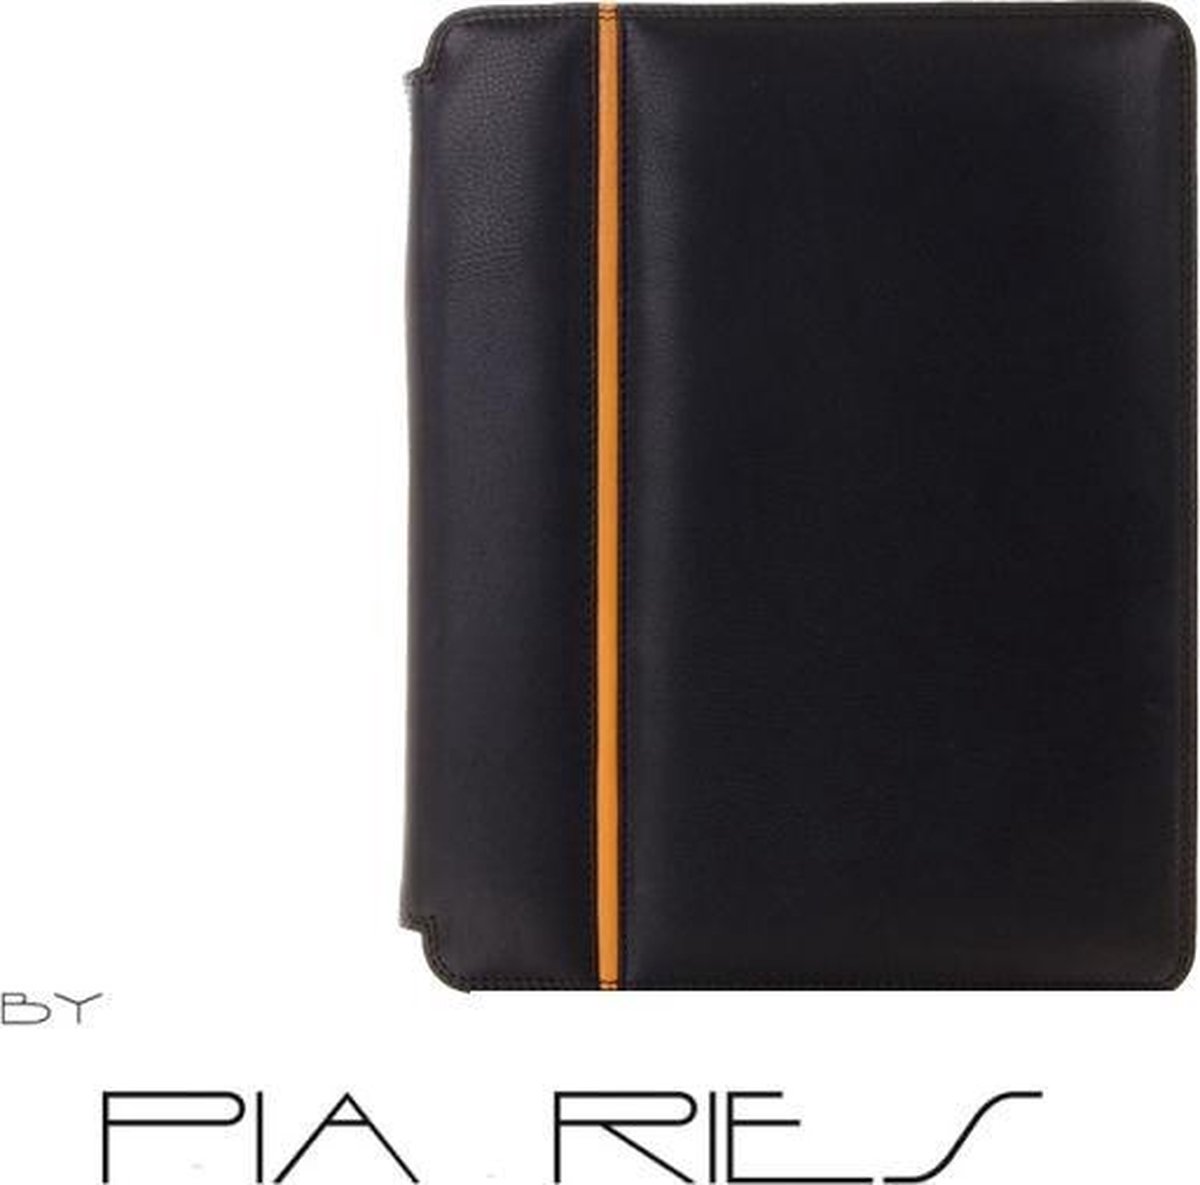 Pia Ries 843 - 3 Zwarte iPadcover met geel accent. Gemaakt van zacht kalfsleder.